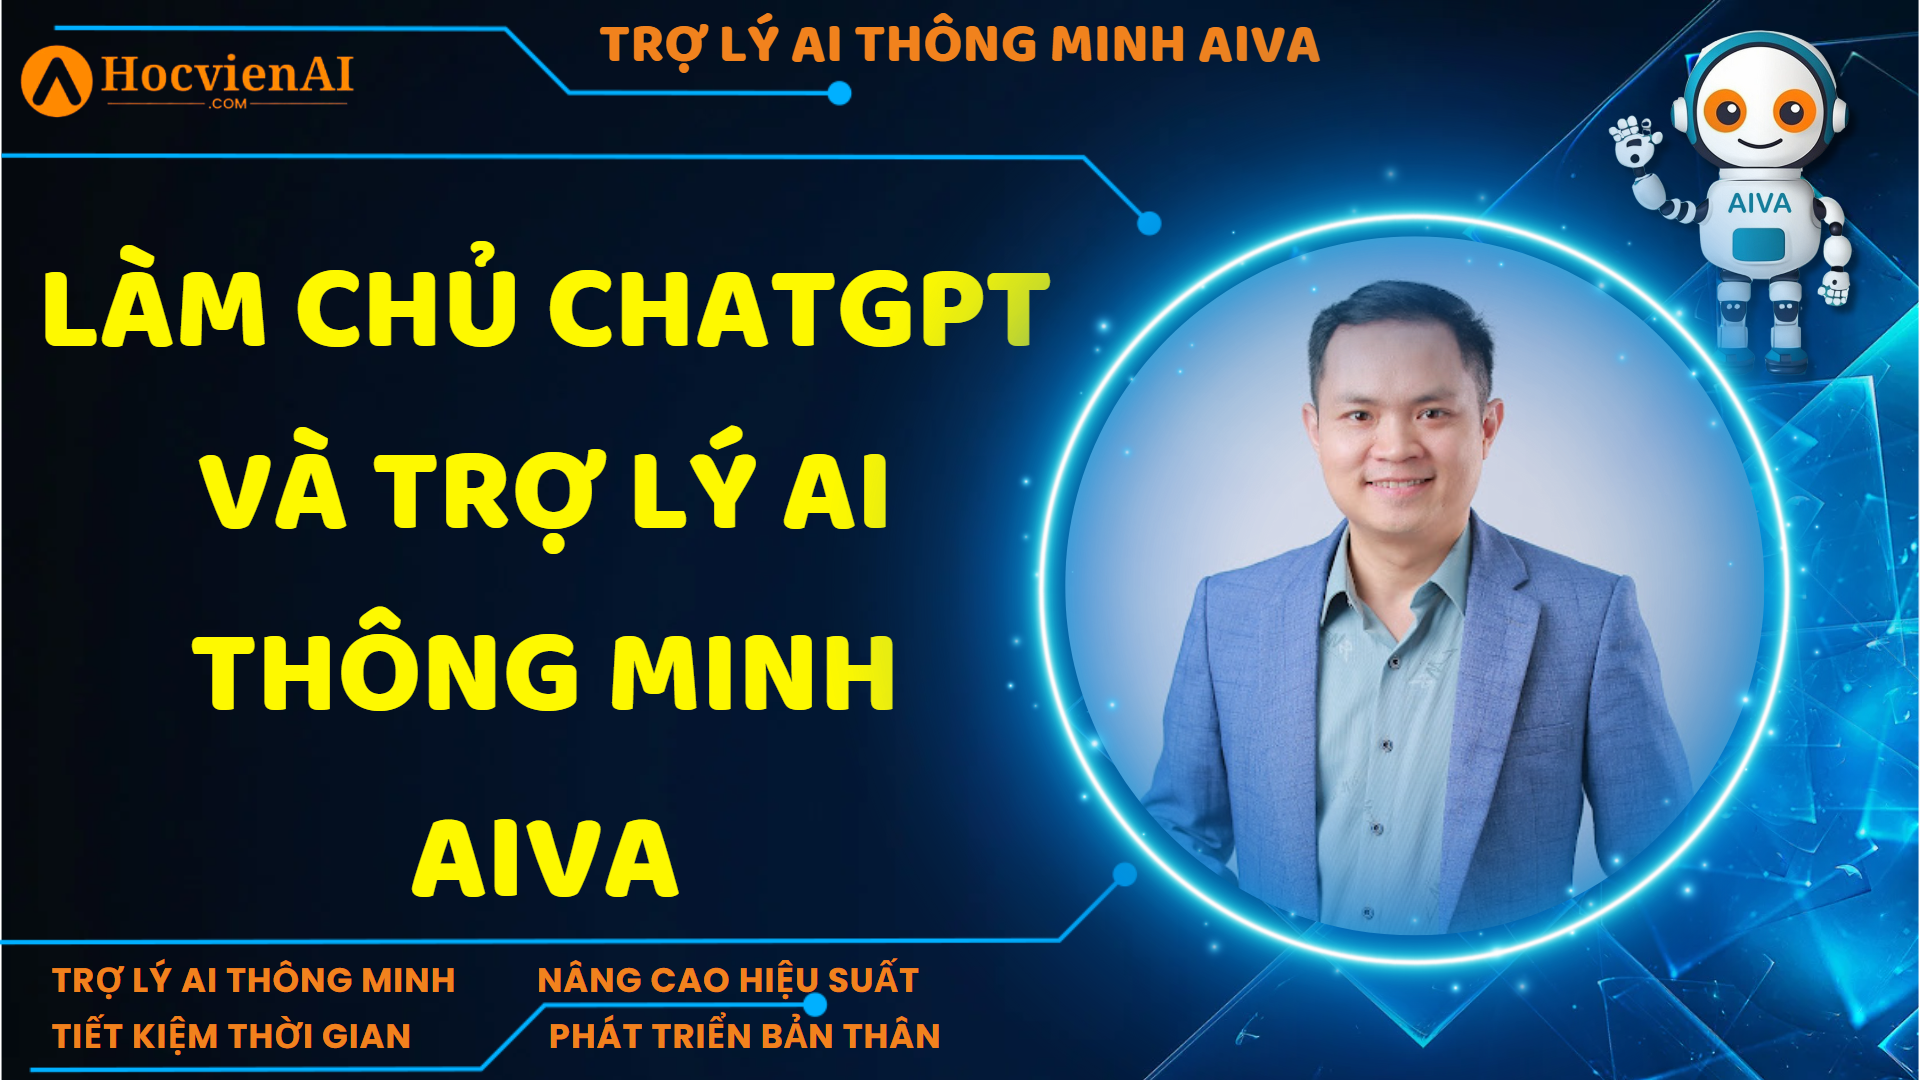 Làm Chủ ChatGPT và Trợ Lý AI Thông Minh AIVA